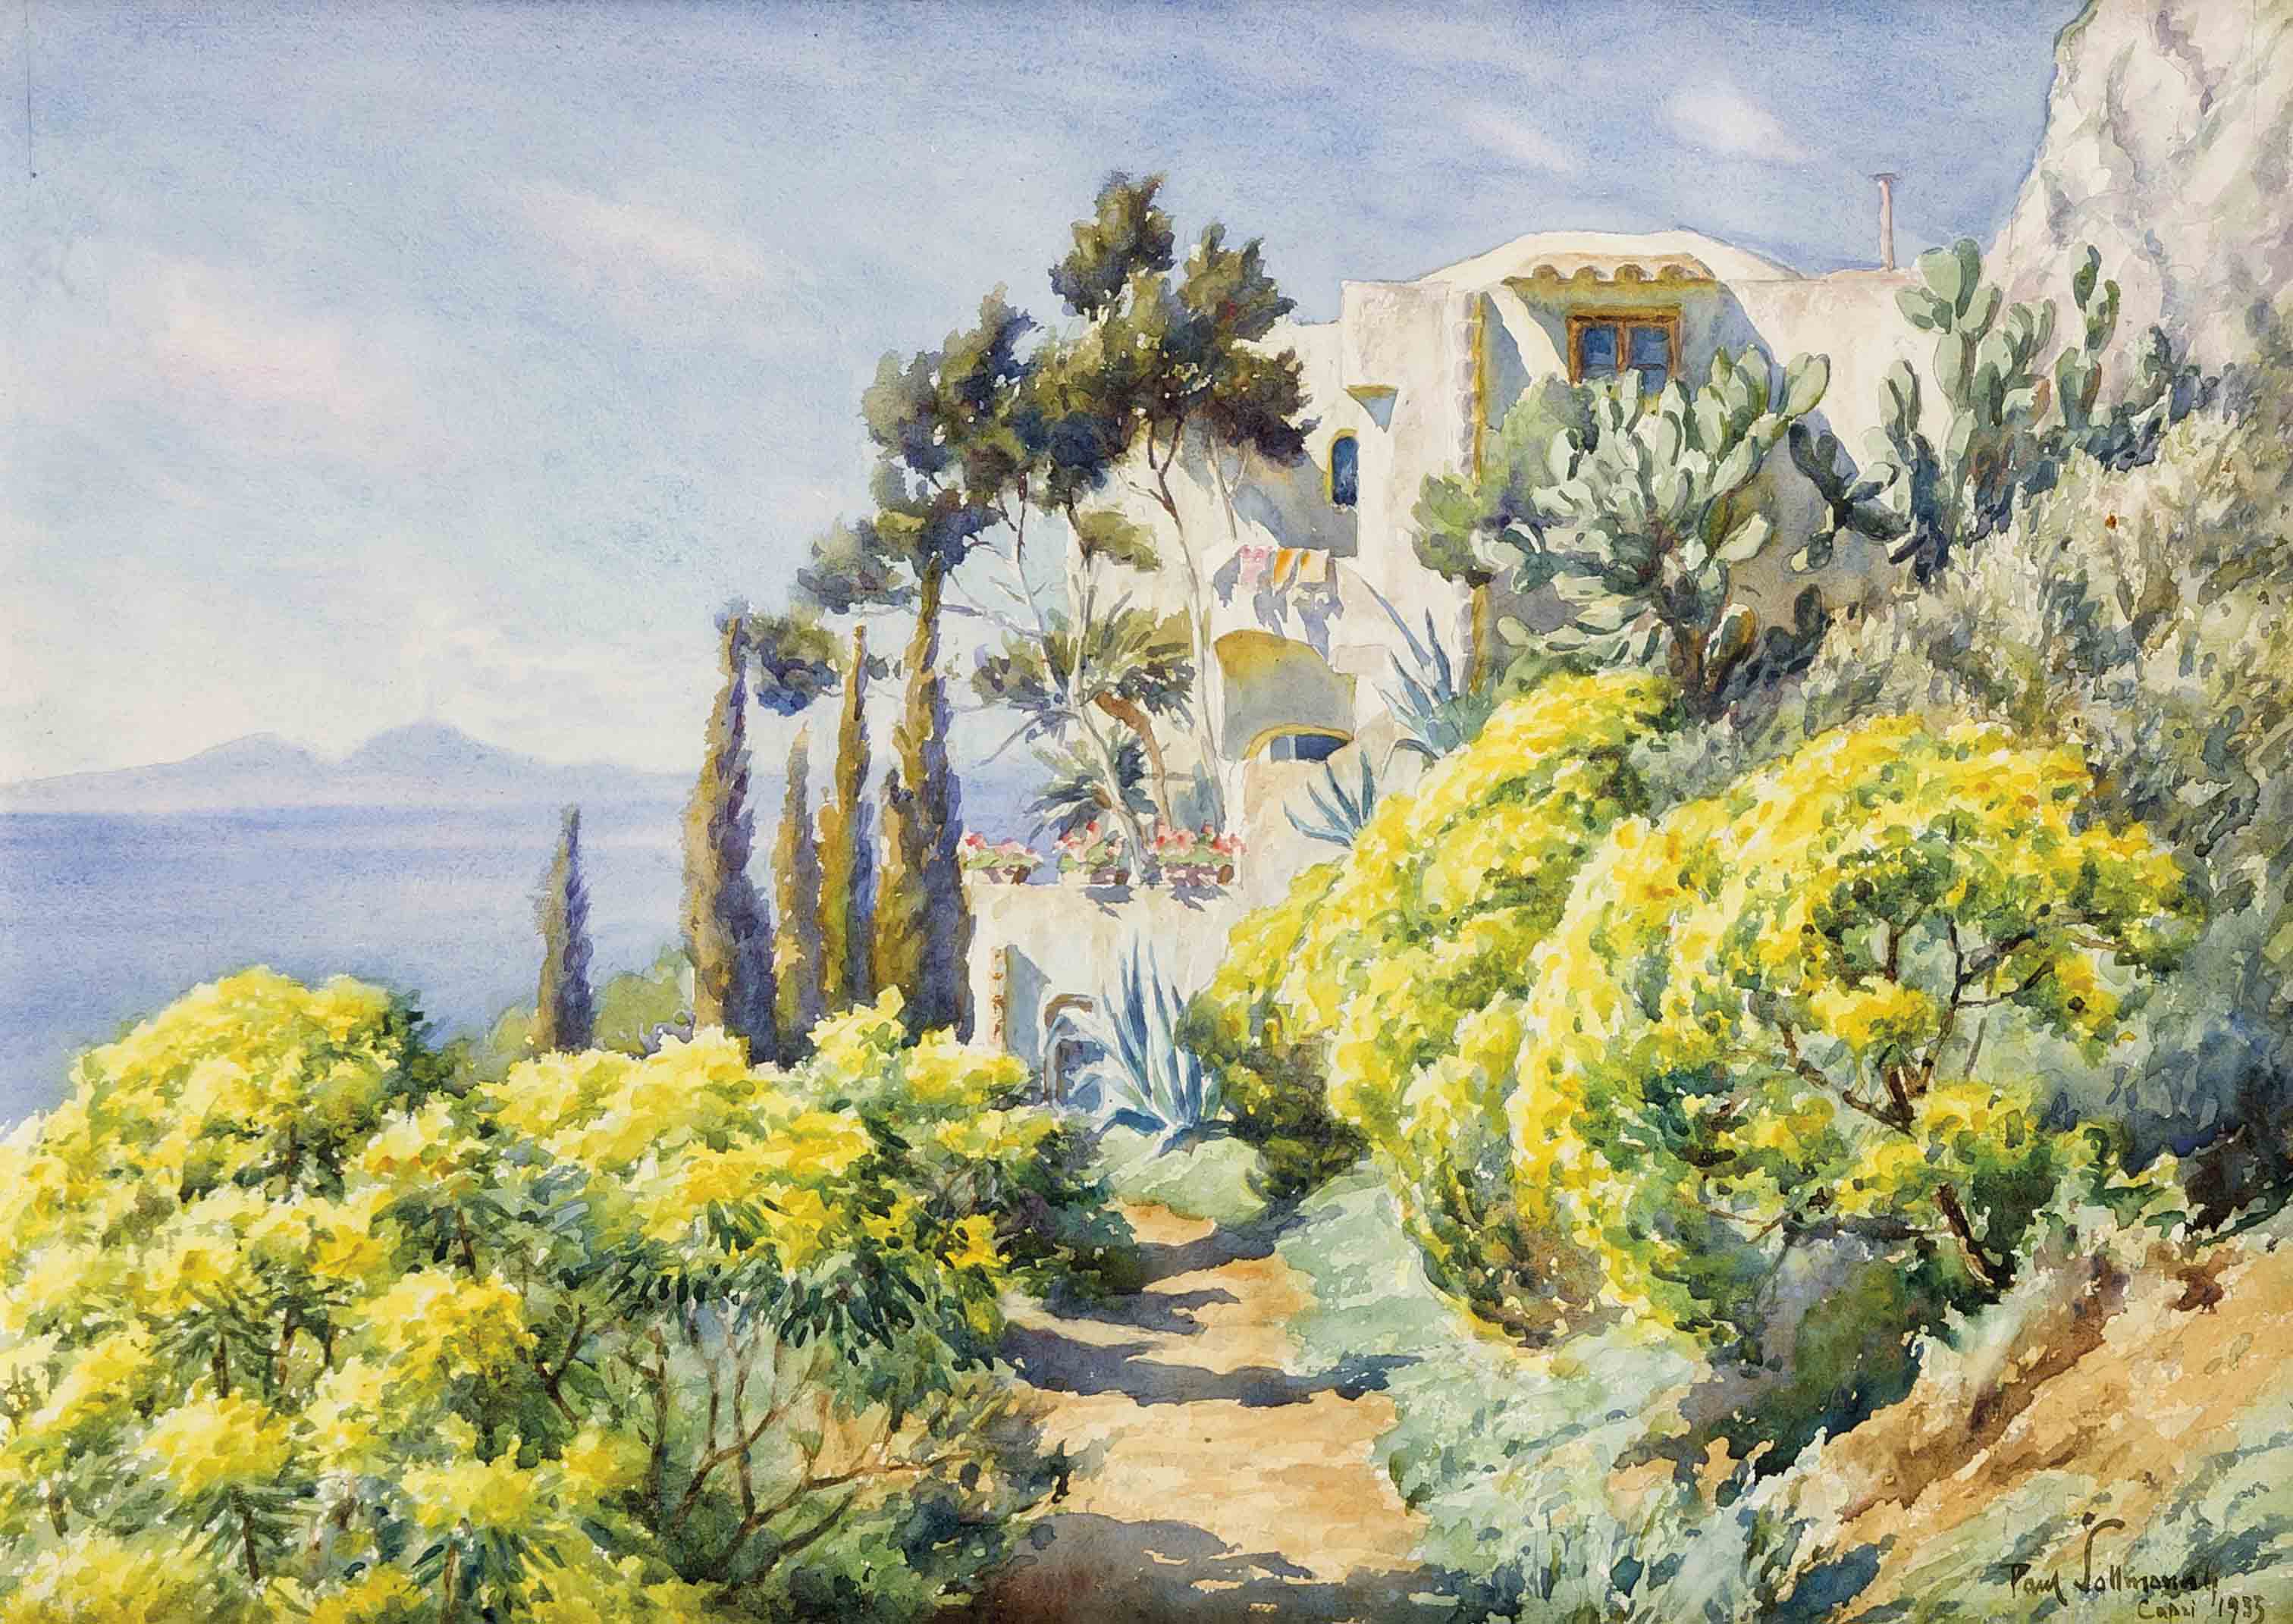 Paul Sollman (1886-1950), in Coburg geb. Landschafts- und Architekturmaler, sowieGrafiker, studierte